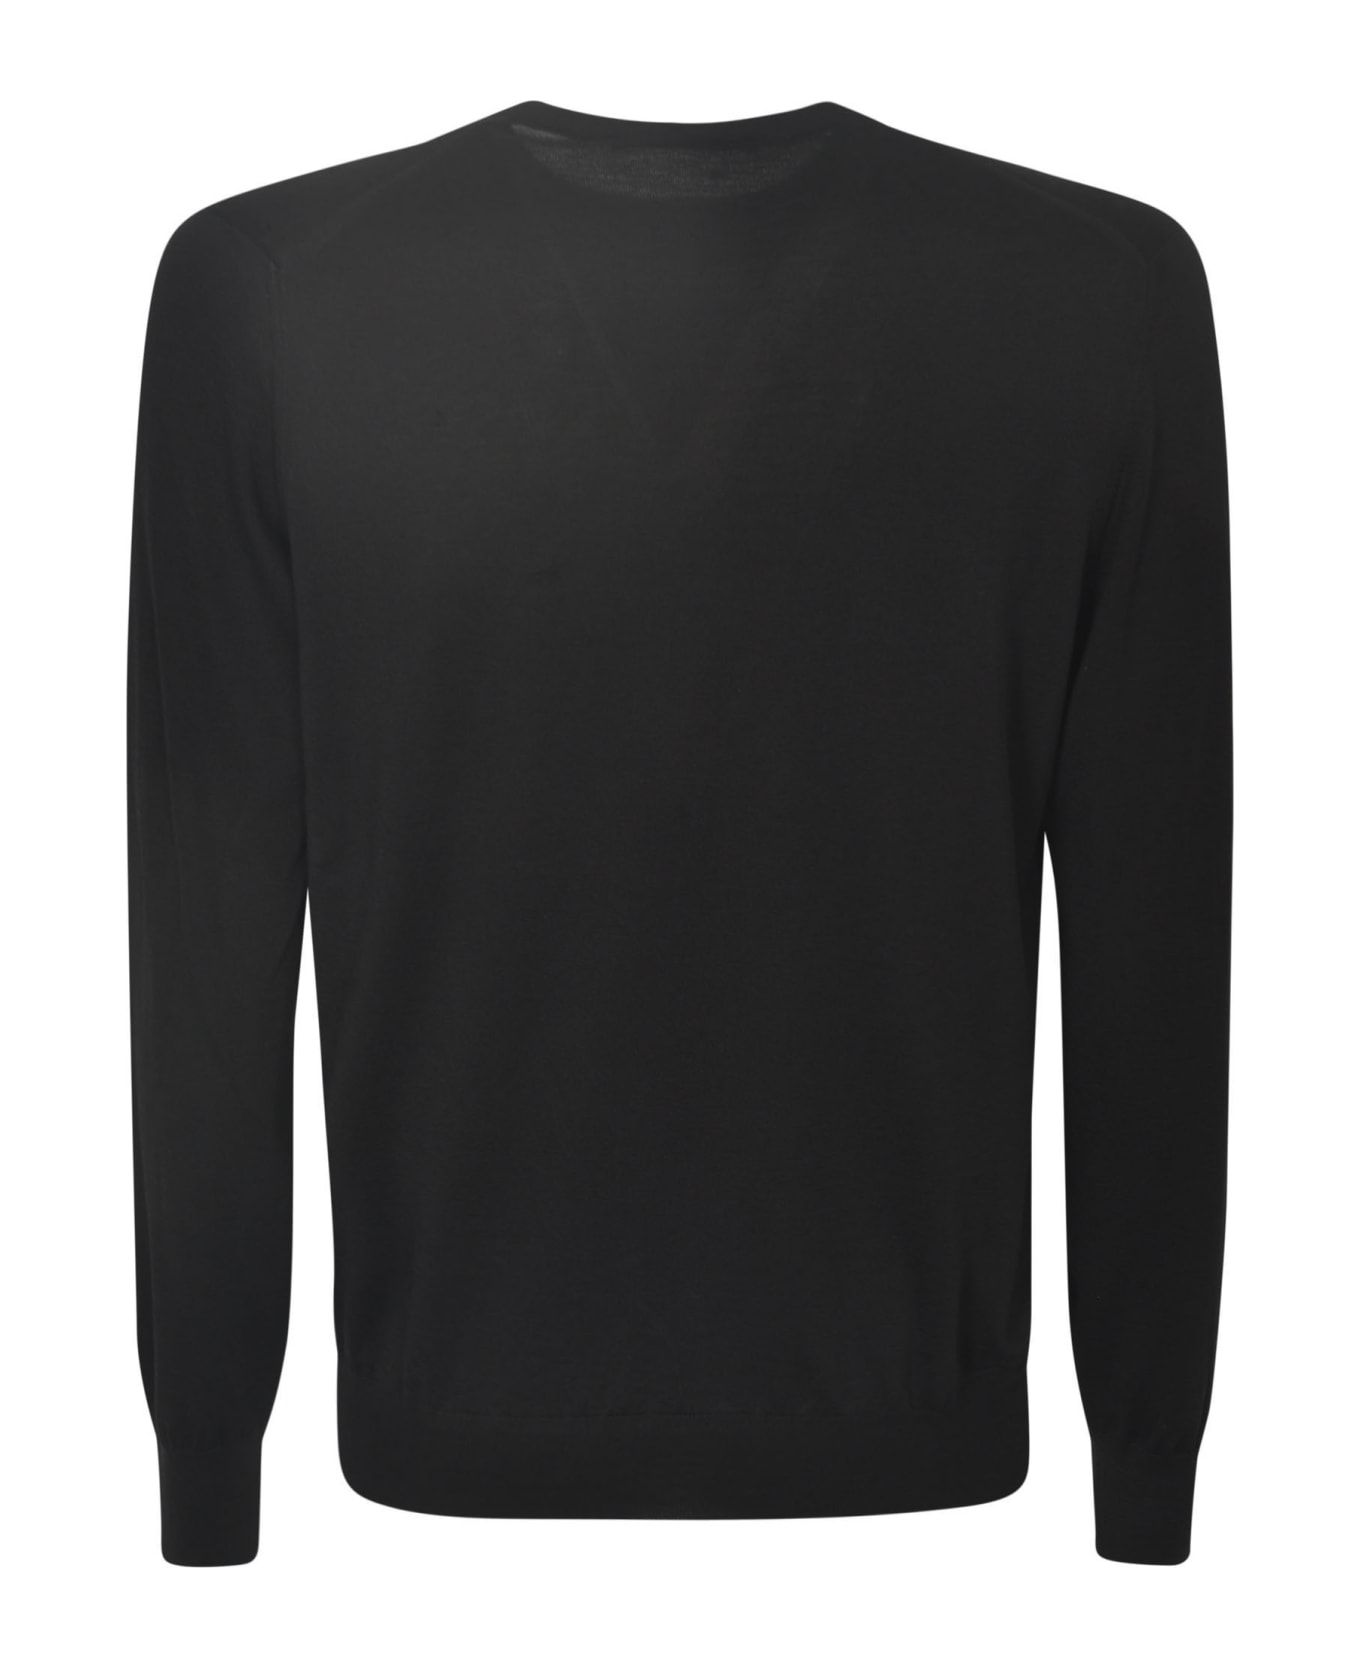 Tagliatore Gray Sweater - Black ニットウェア